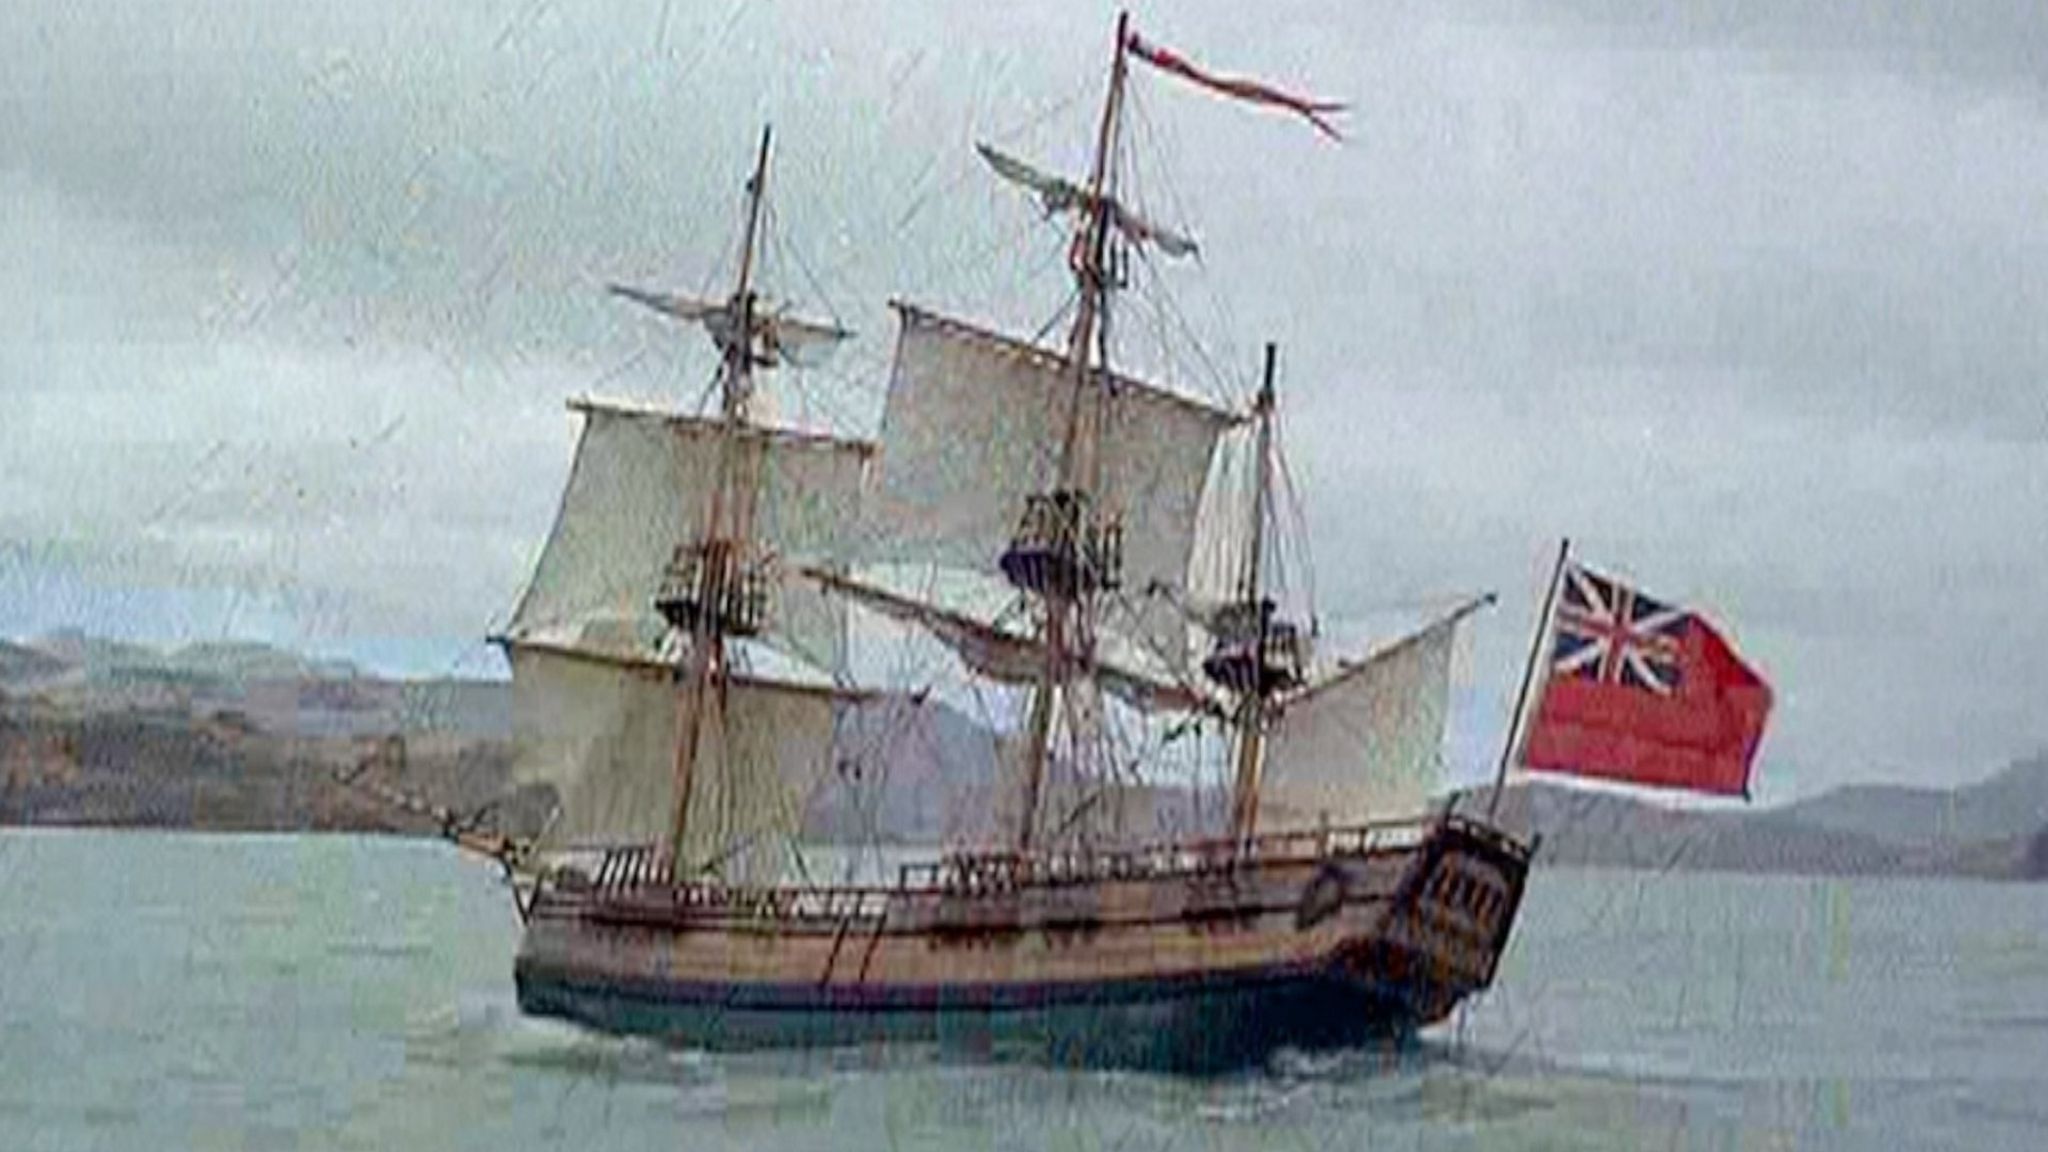 HMS Endeavour reconstruction